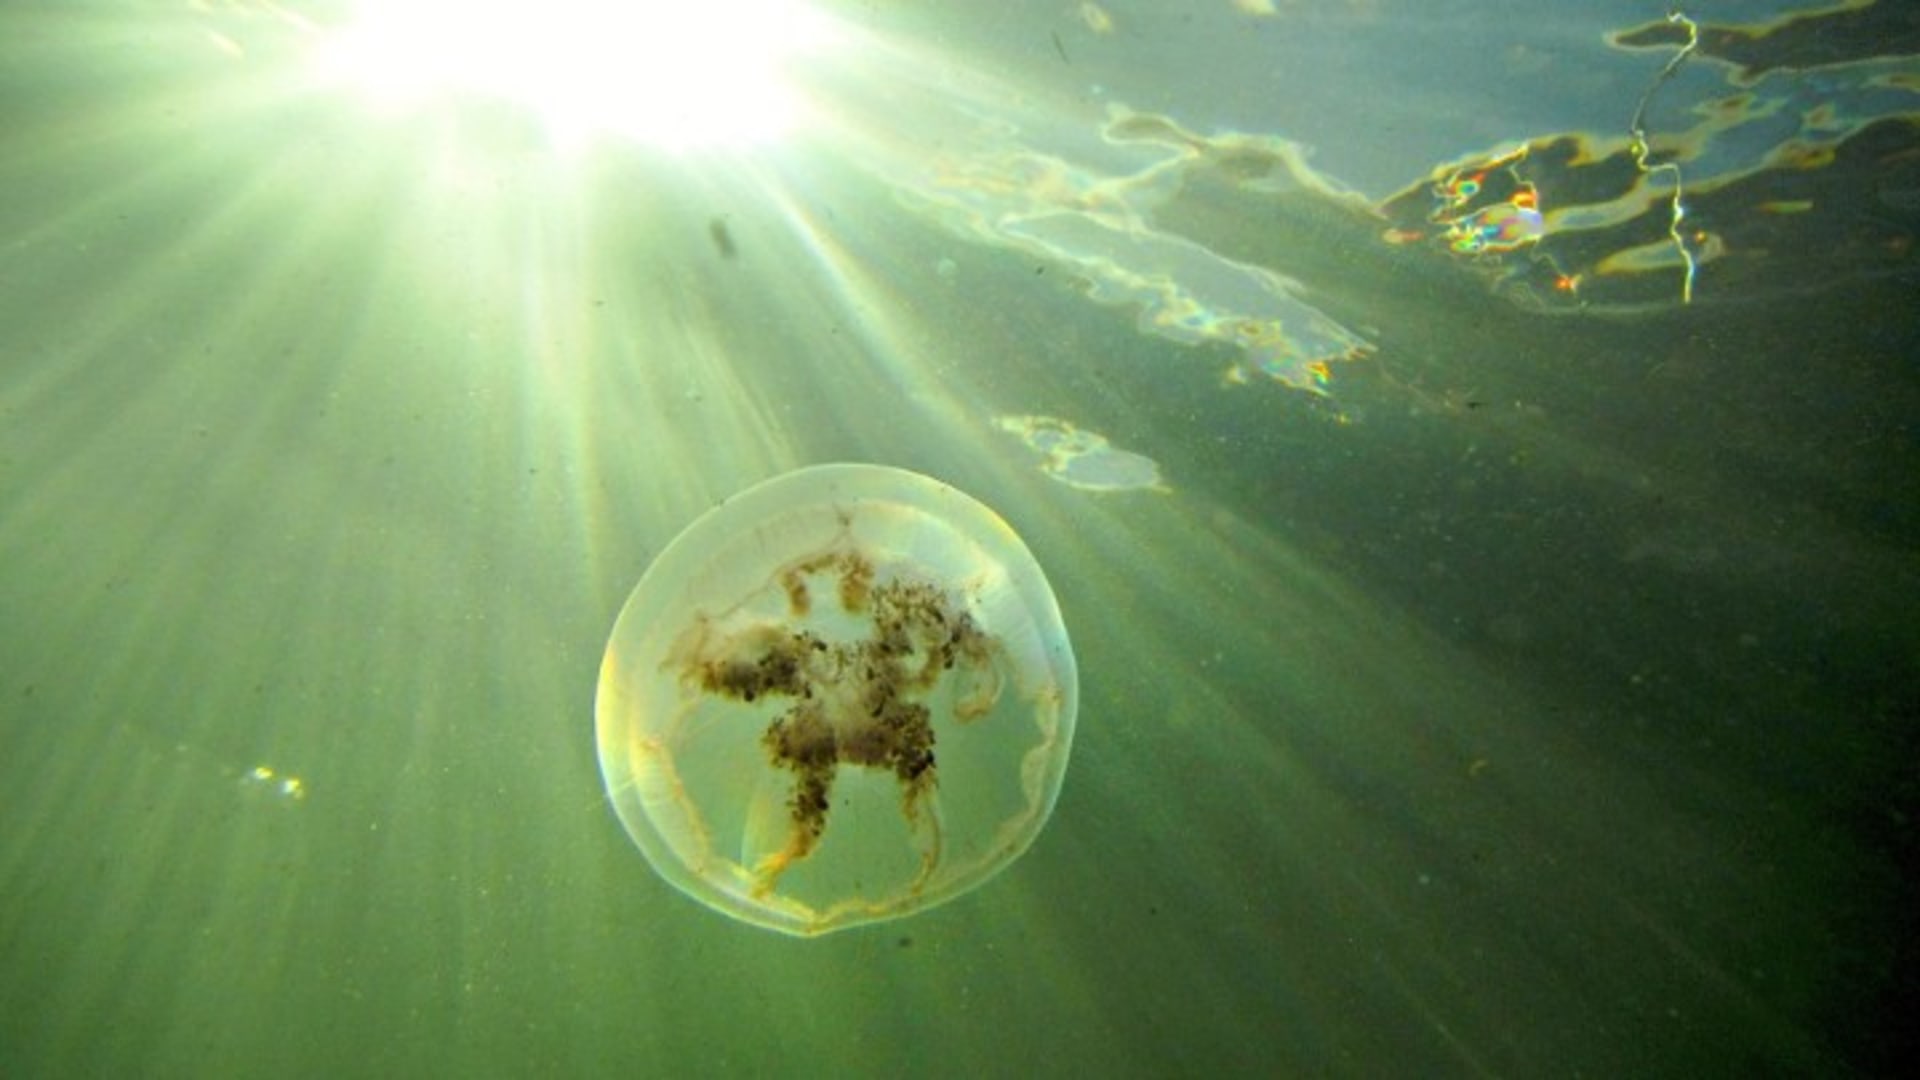 Kausi 1, 6/10. Meduusa, aivoton hyytelö, on evoluution menestystarina. Mihin ne katosivat tänä vuonna? Kimmo jahtaa meduusaa kameran kanssa Itämeressä ja Minna selvittää, mikä tekee meduusasta niin suuren mysteerin.